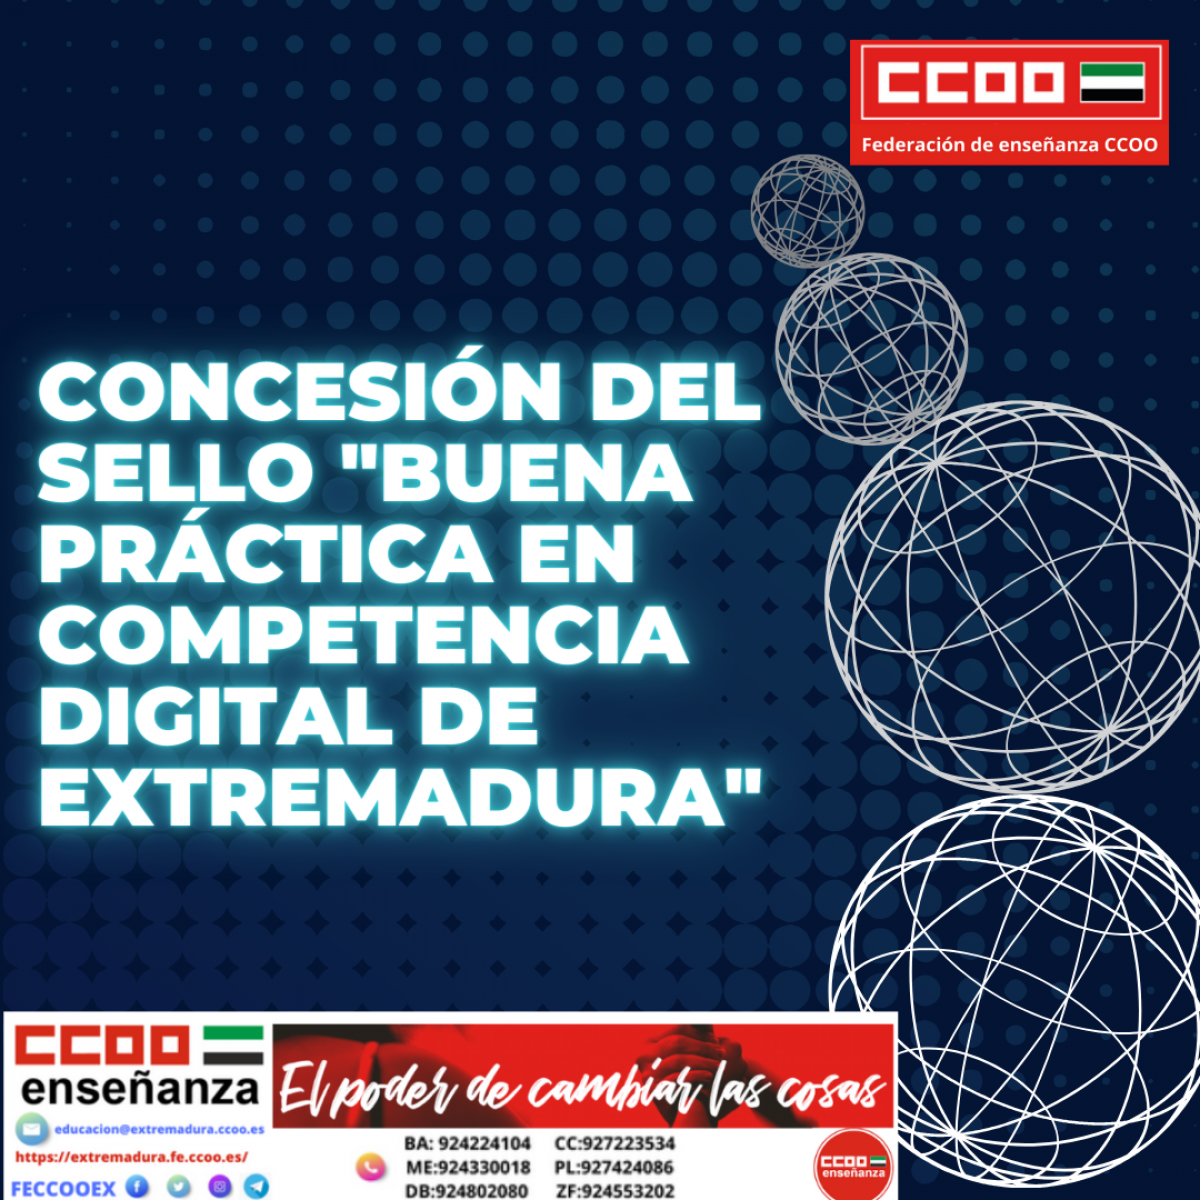 Sello " Buena prctica en competencia digital de Extremadura"